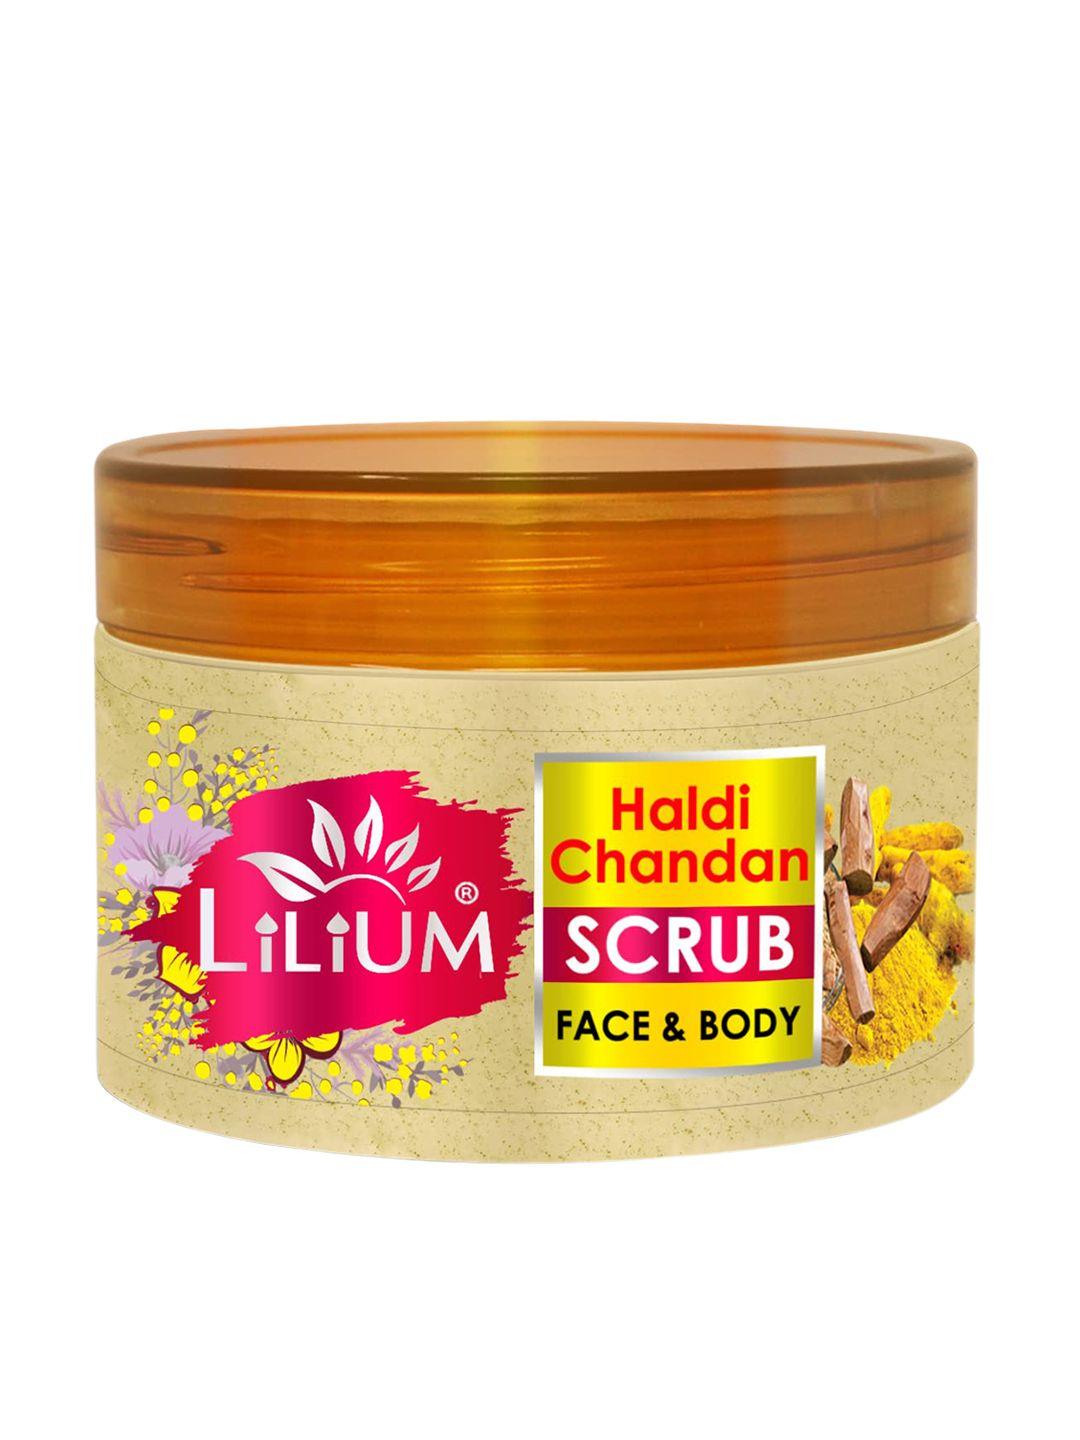 lilium haldi chandan face & body scrub with vitamin e & aloevera - 250 g